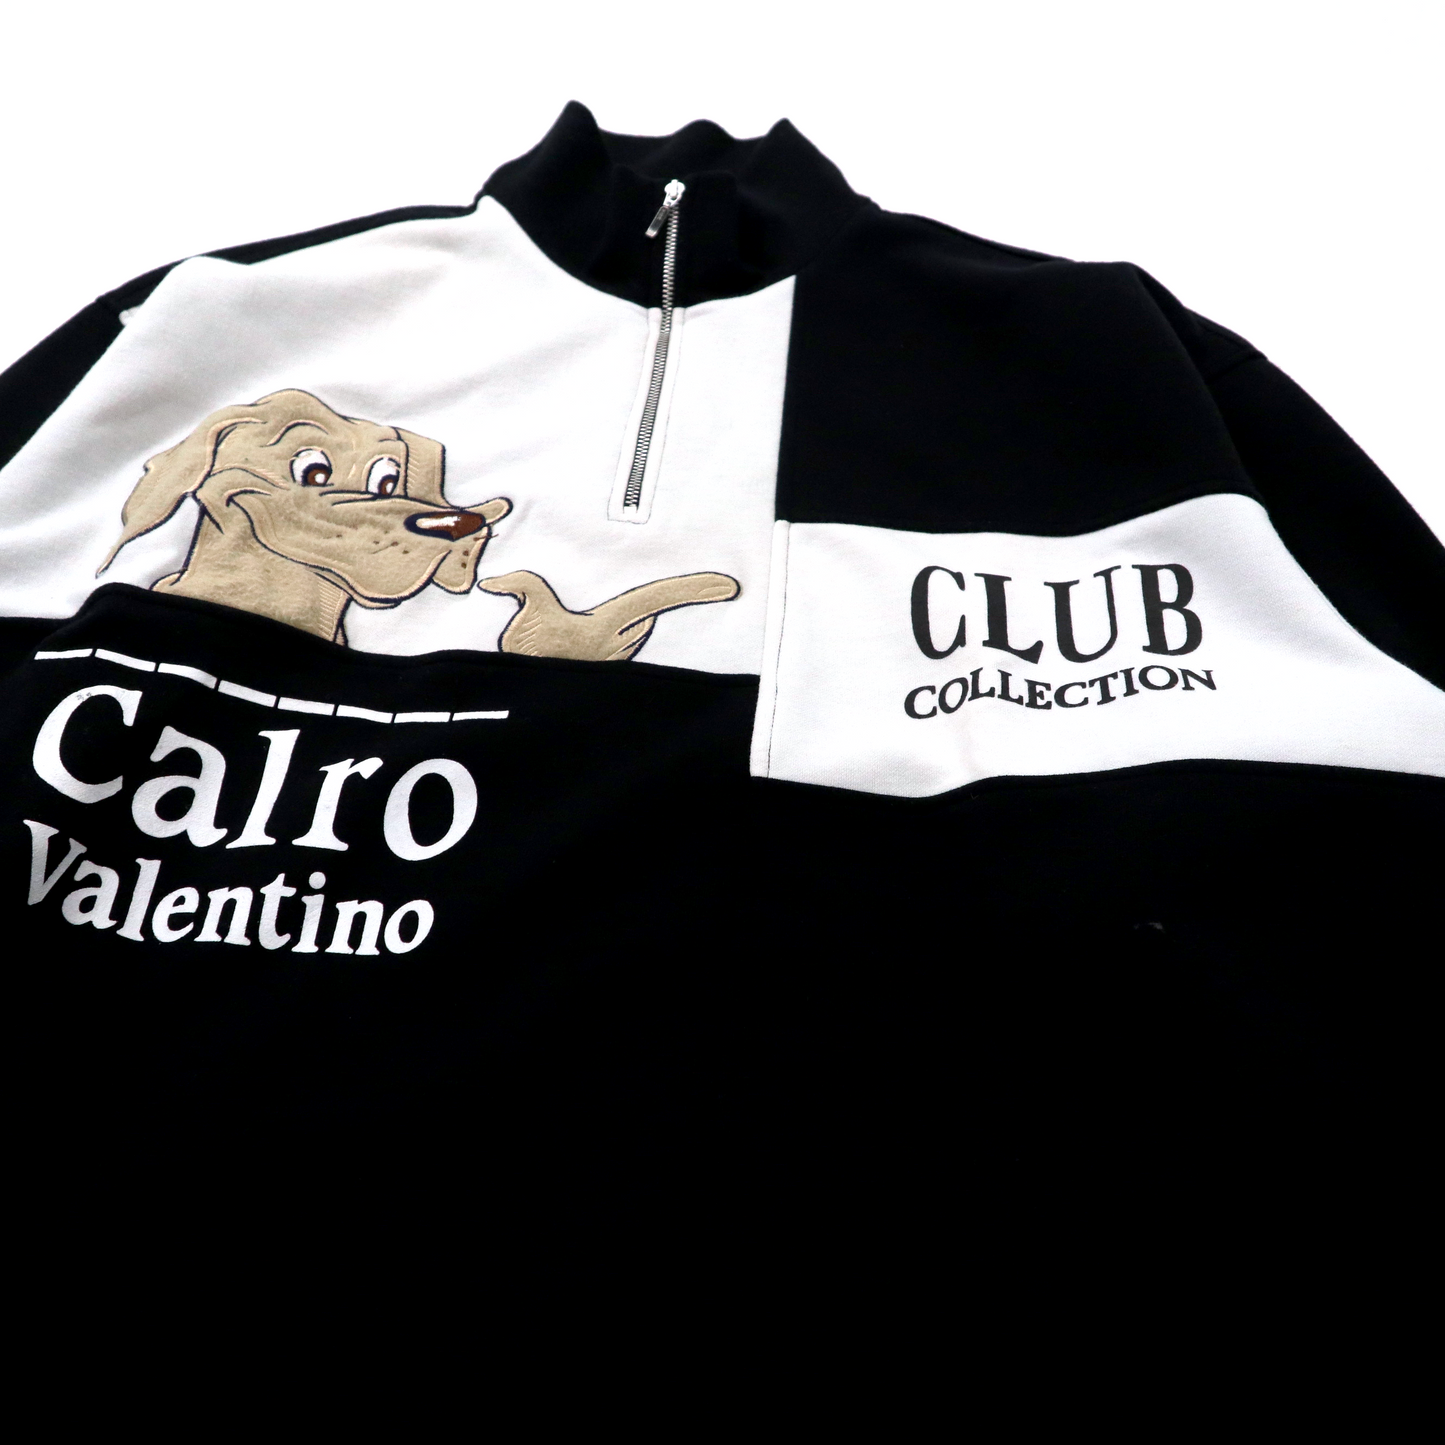 Calro Valentino セットアップ ジャージ ハーフジップスウェット LL ブラック 犬 キャラクター ビッグサイズ 90年代